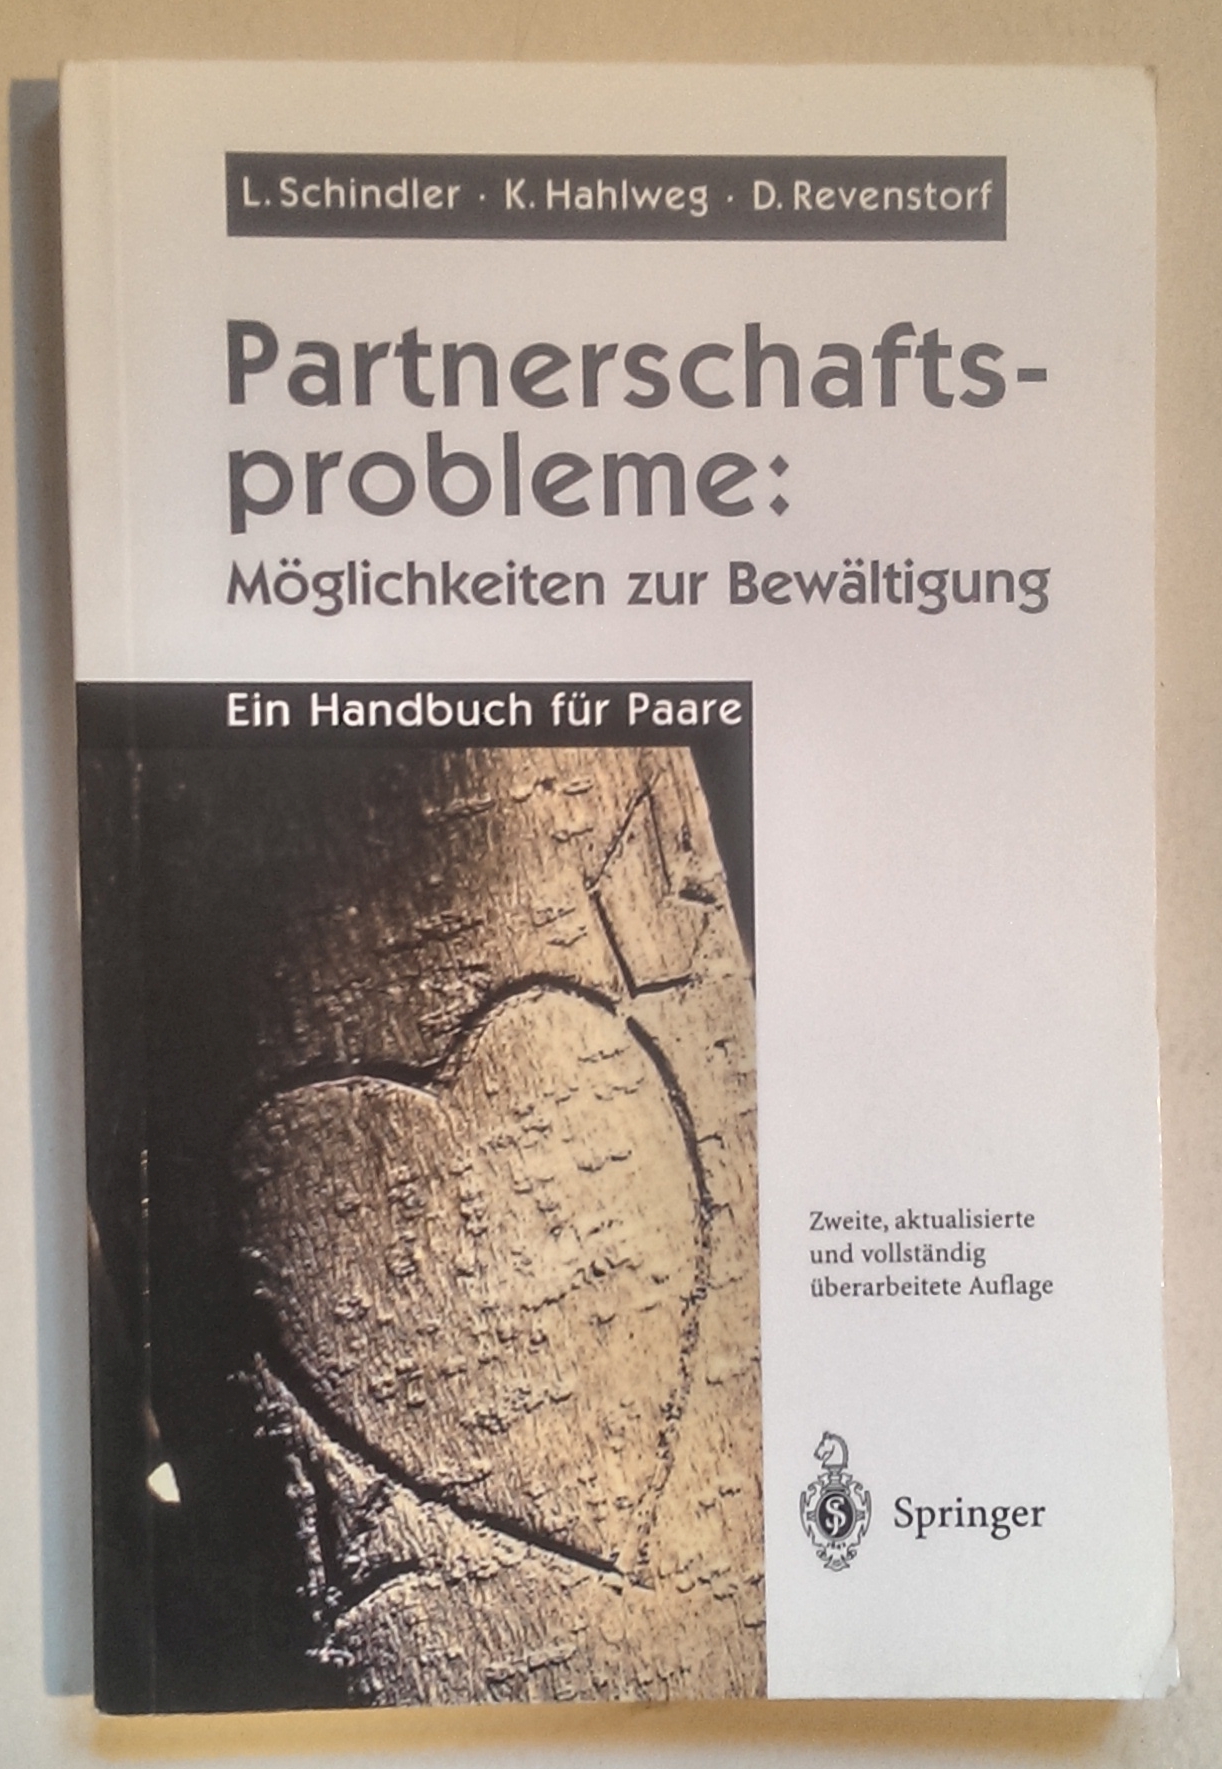 Partnerschaftsprobleme: Möglichkeiten zur Bewältigung. Ein Handbuch für Paare. - Schindler, Ludwig ; Hahlweg, Kurt ; Revenstorf, Dirk